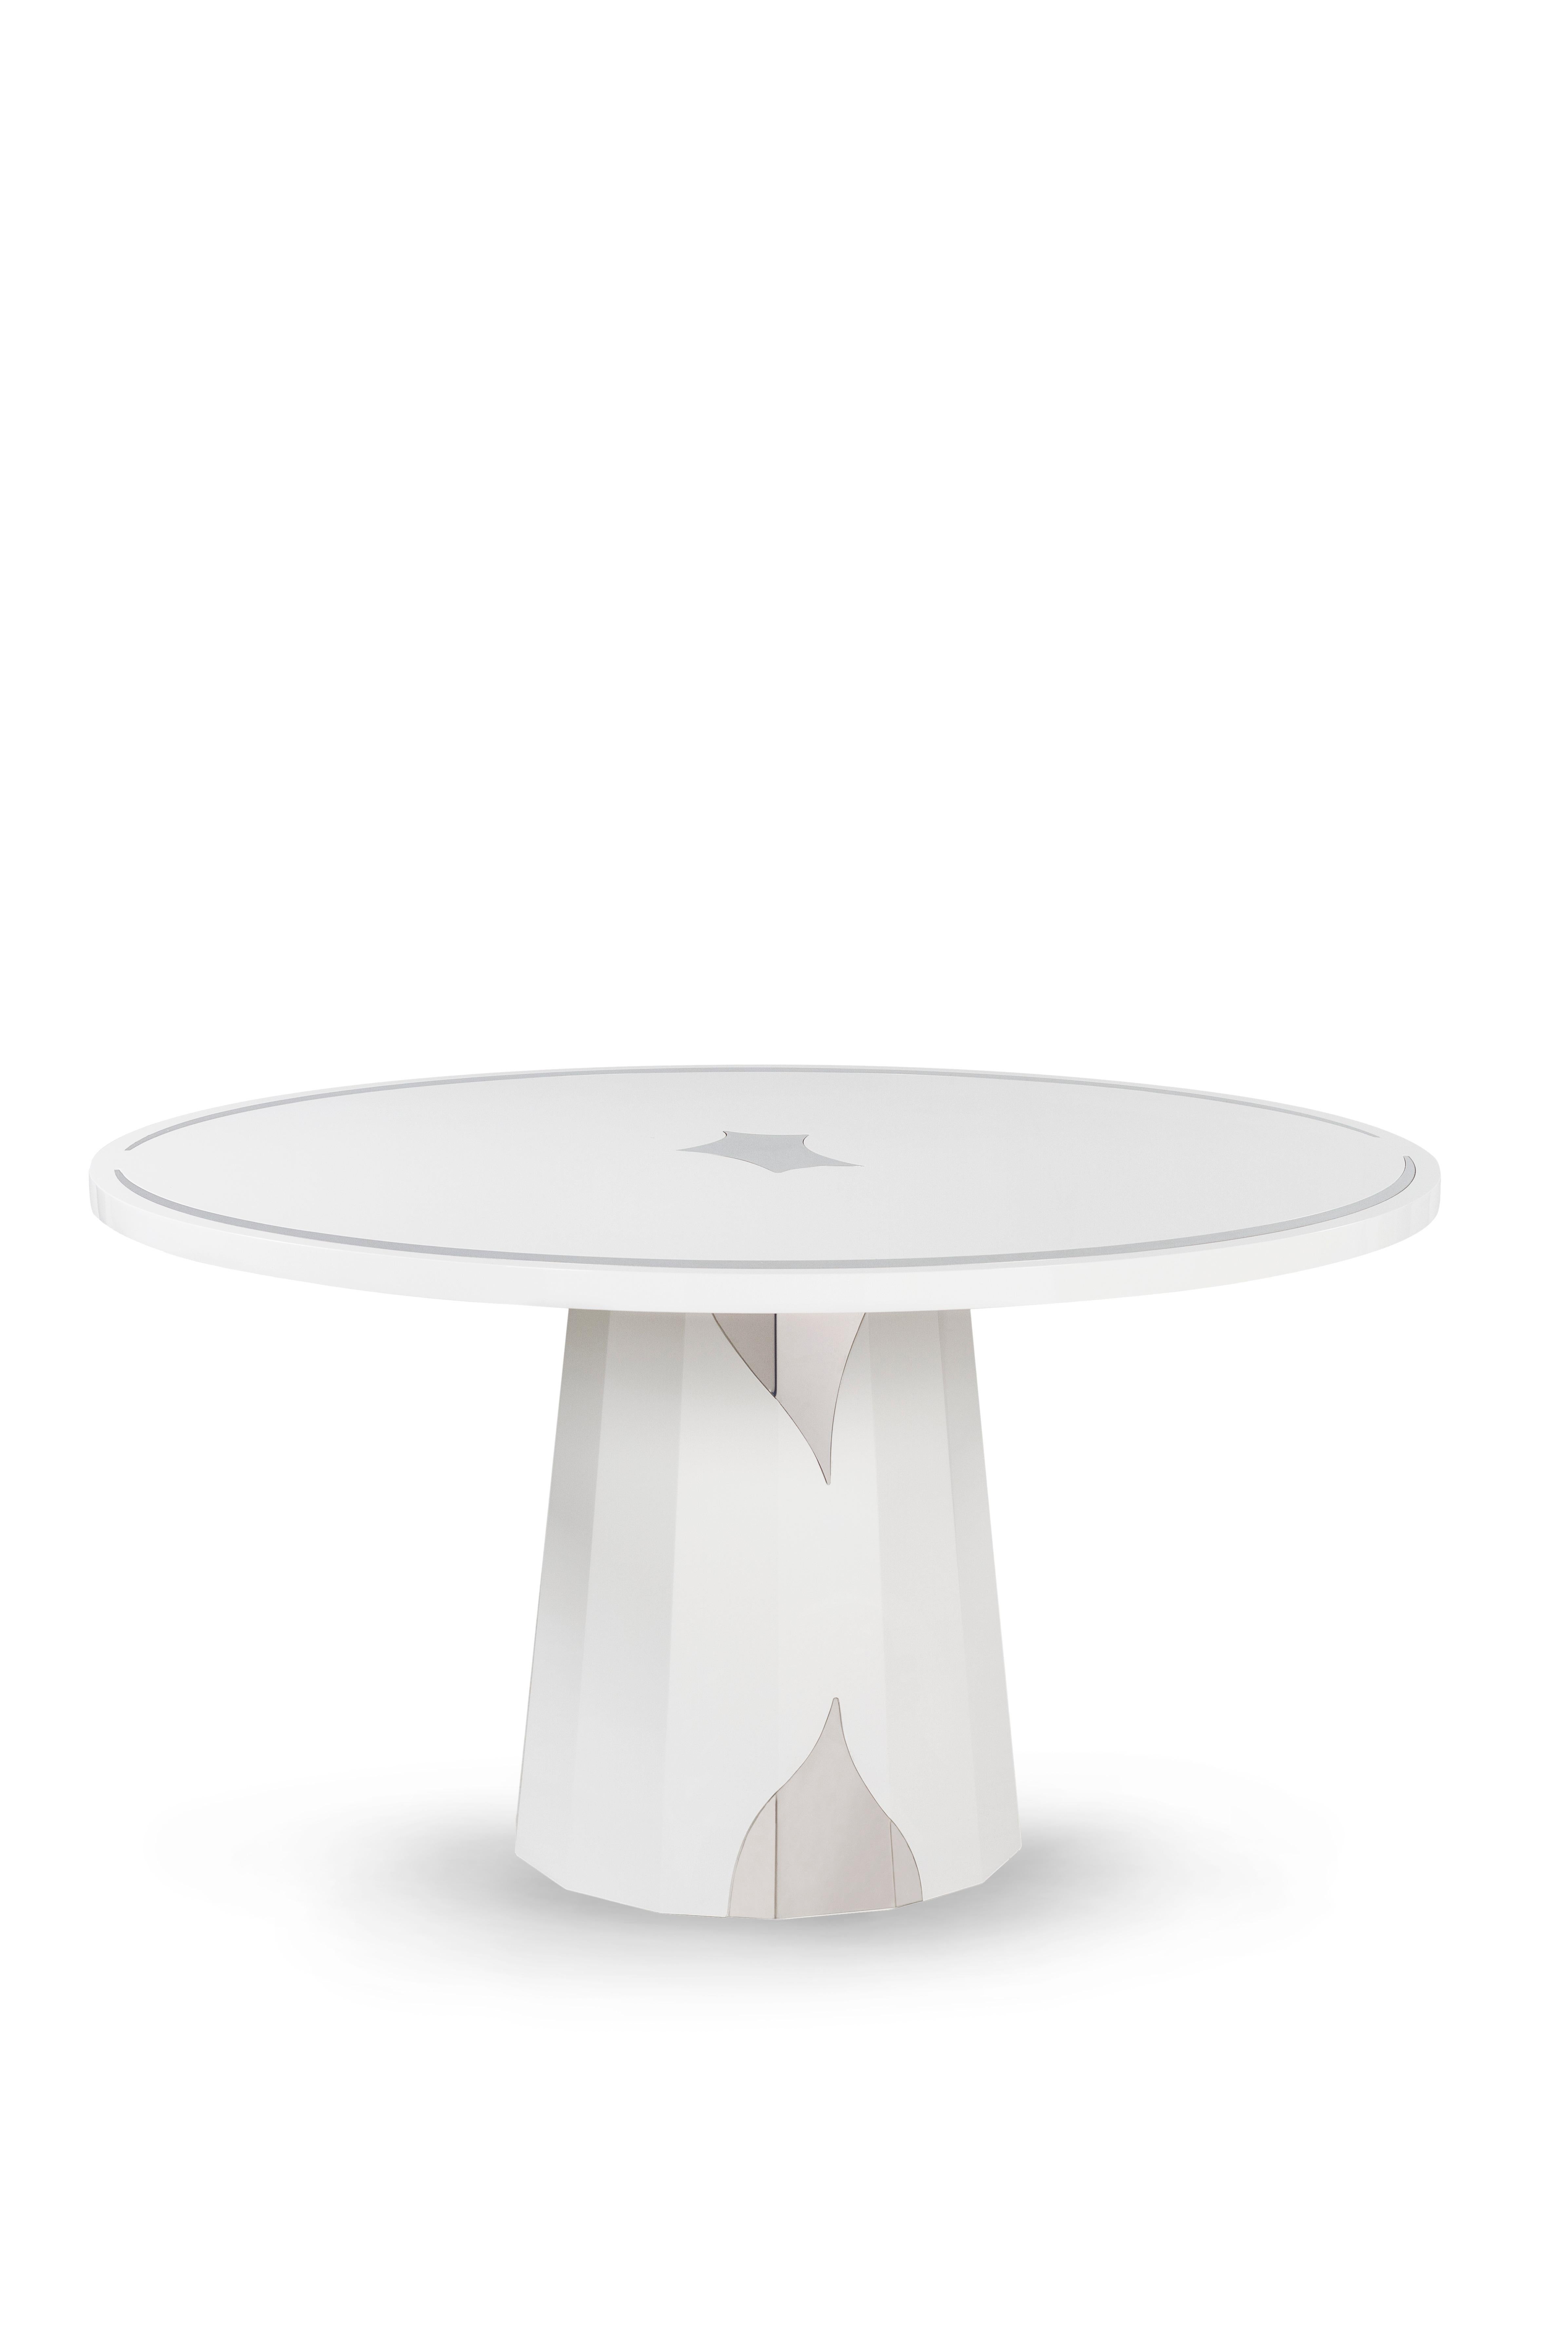 Howlite Esstisch mit 4 Sitzplätzen, Modern Collection, handgefertigt in Portugal - Europa von GF Modern.

Der weiße Esstisch Howlite steht für den Beginn einer neuen modernen Ära. Die Edelstahleinlagen ergänzen das kühne und auffällige Design und